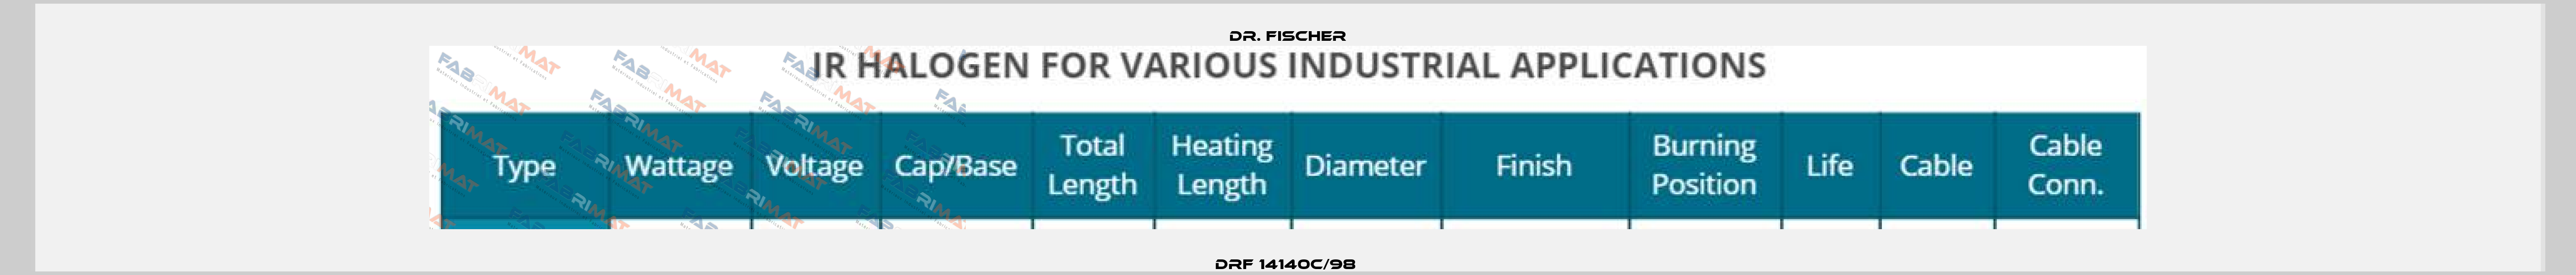 DRF 14140c/98  Dr. Fischer